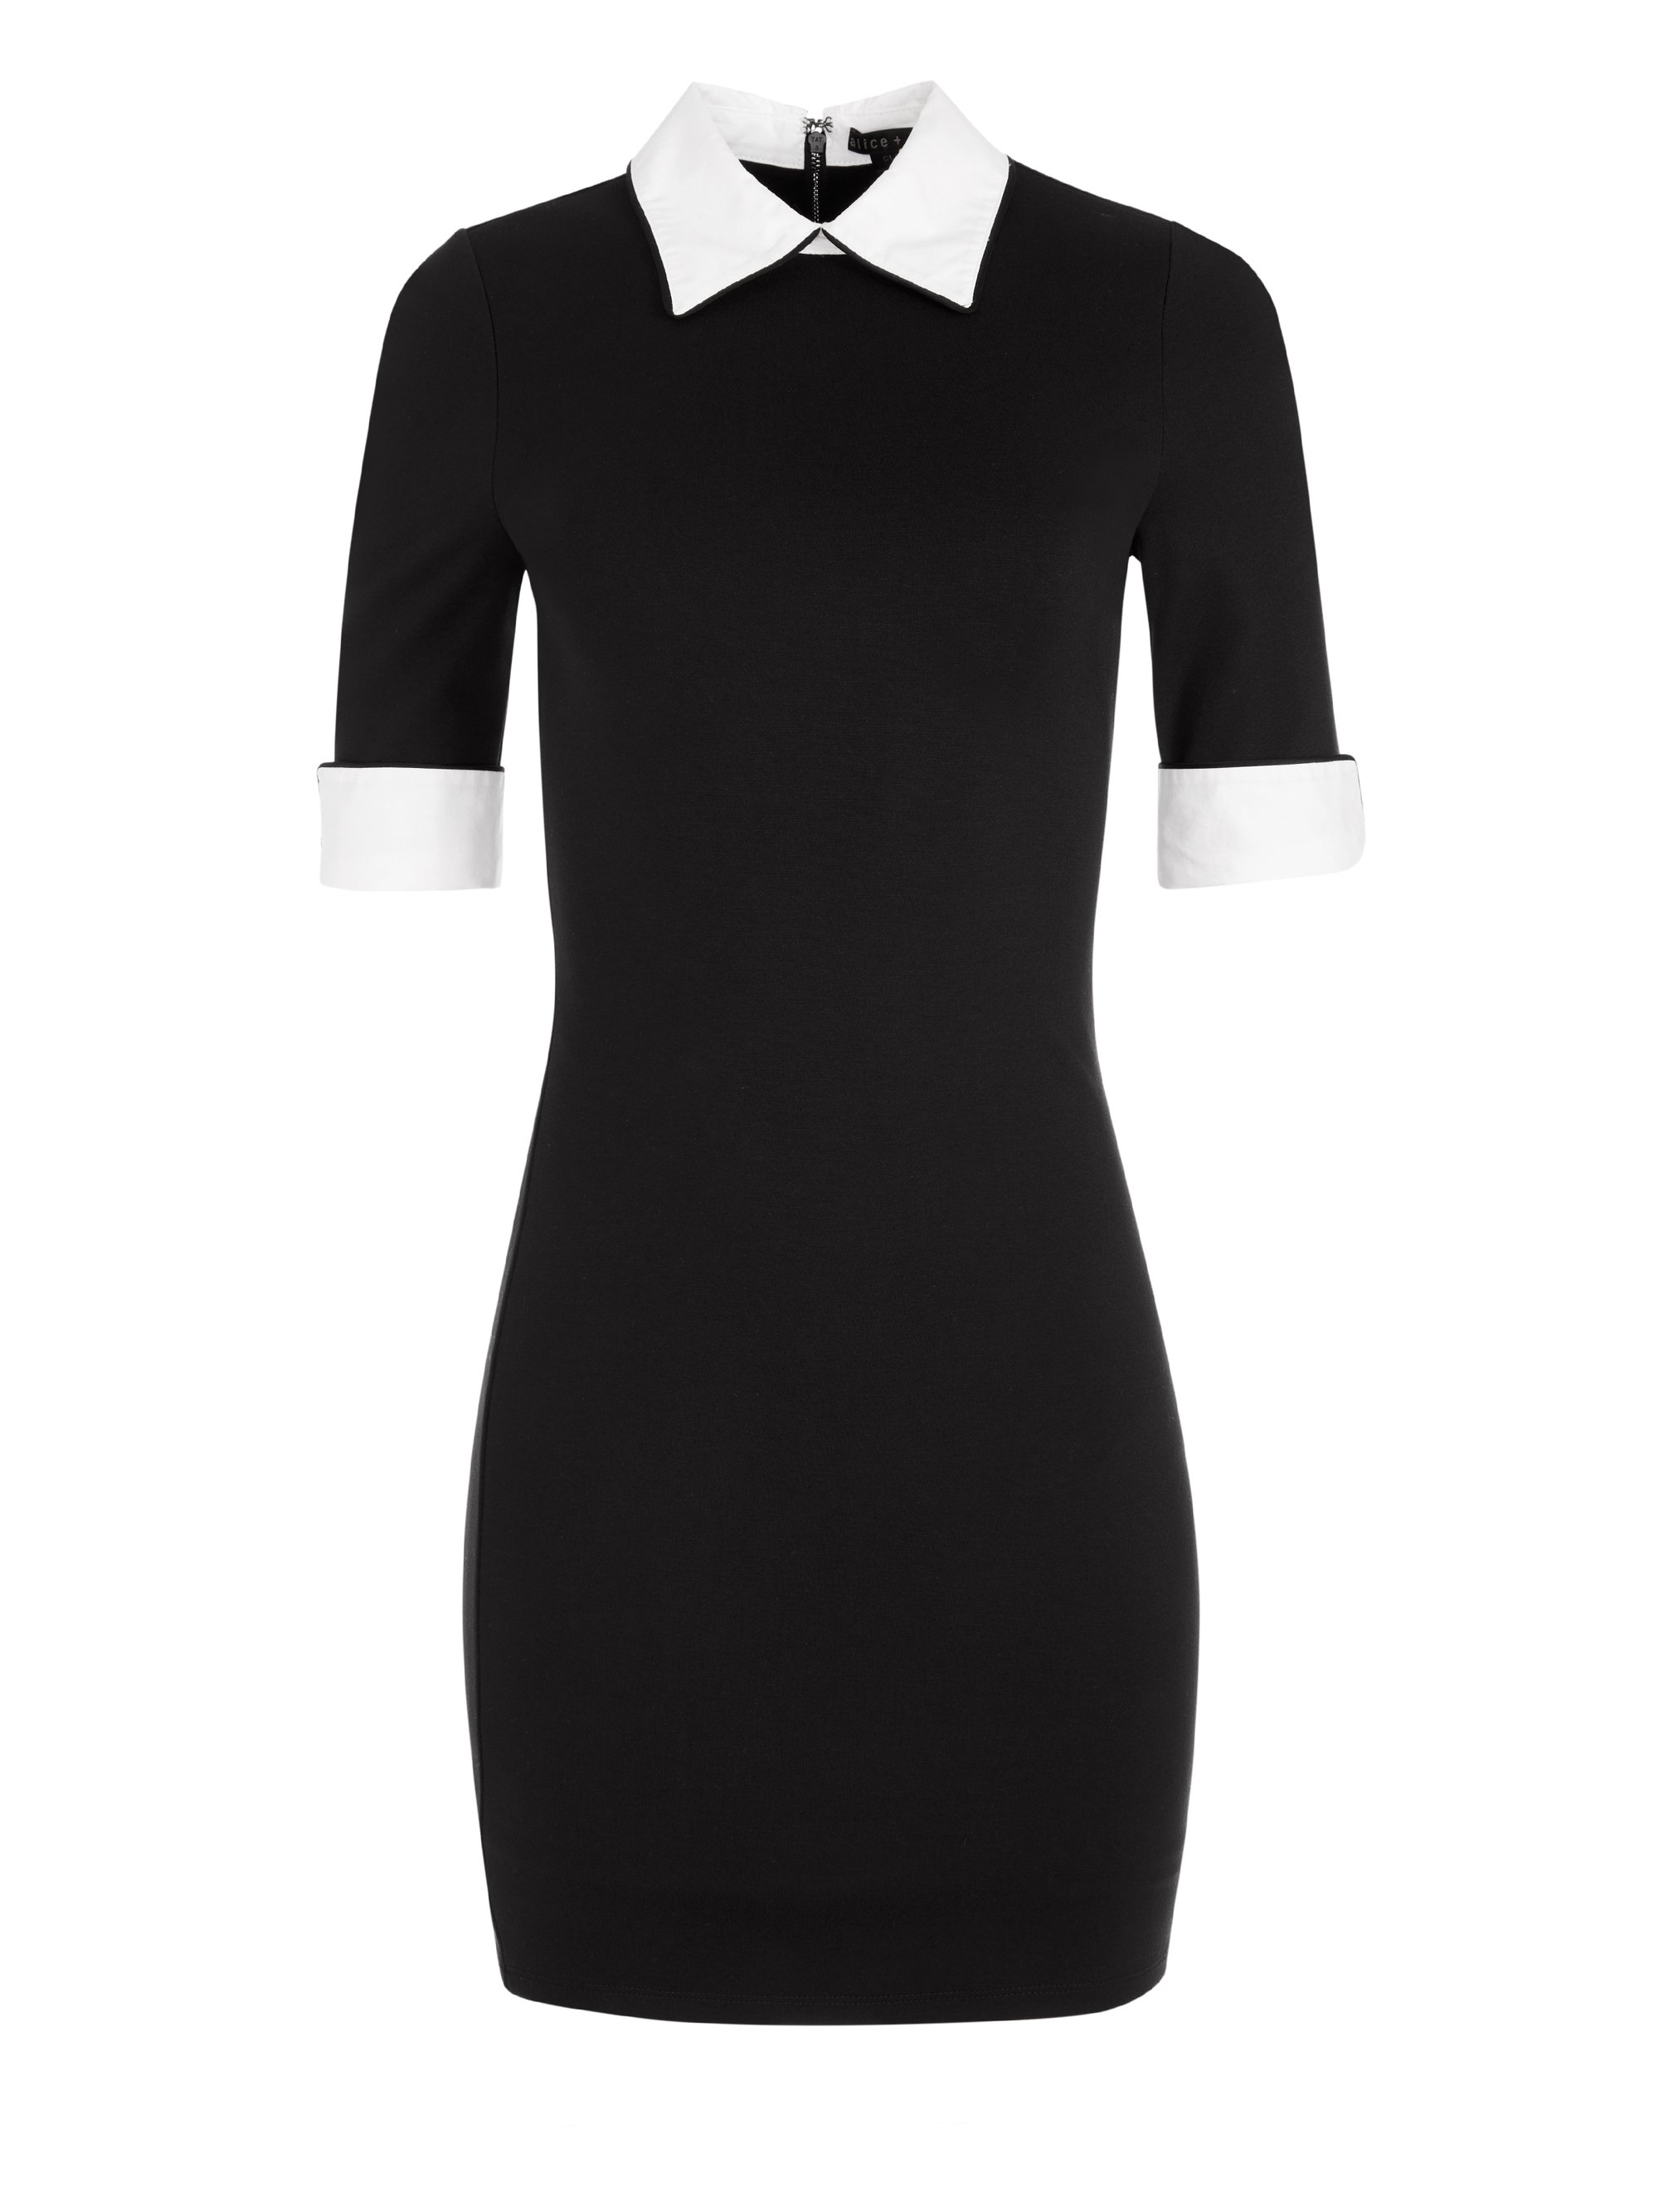 Delora Collared Mini Dress In Black/off White | Alice And Olivia